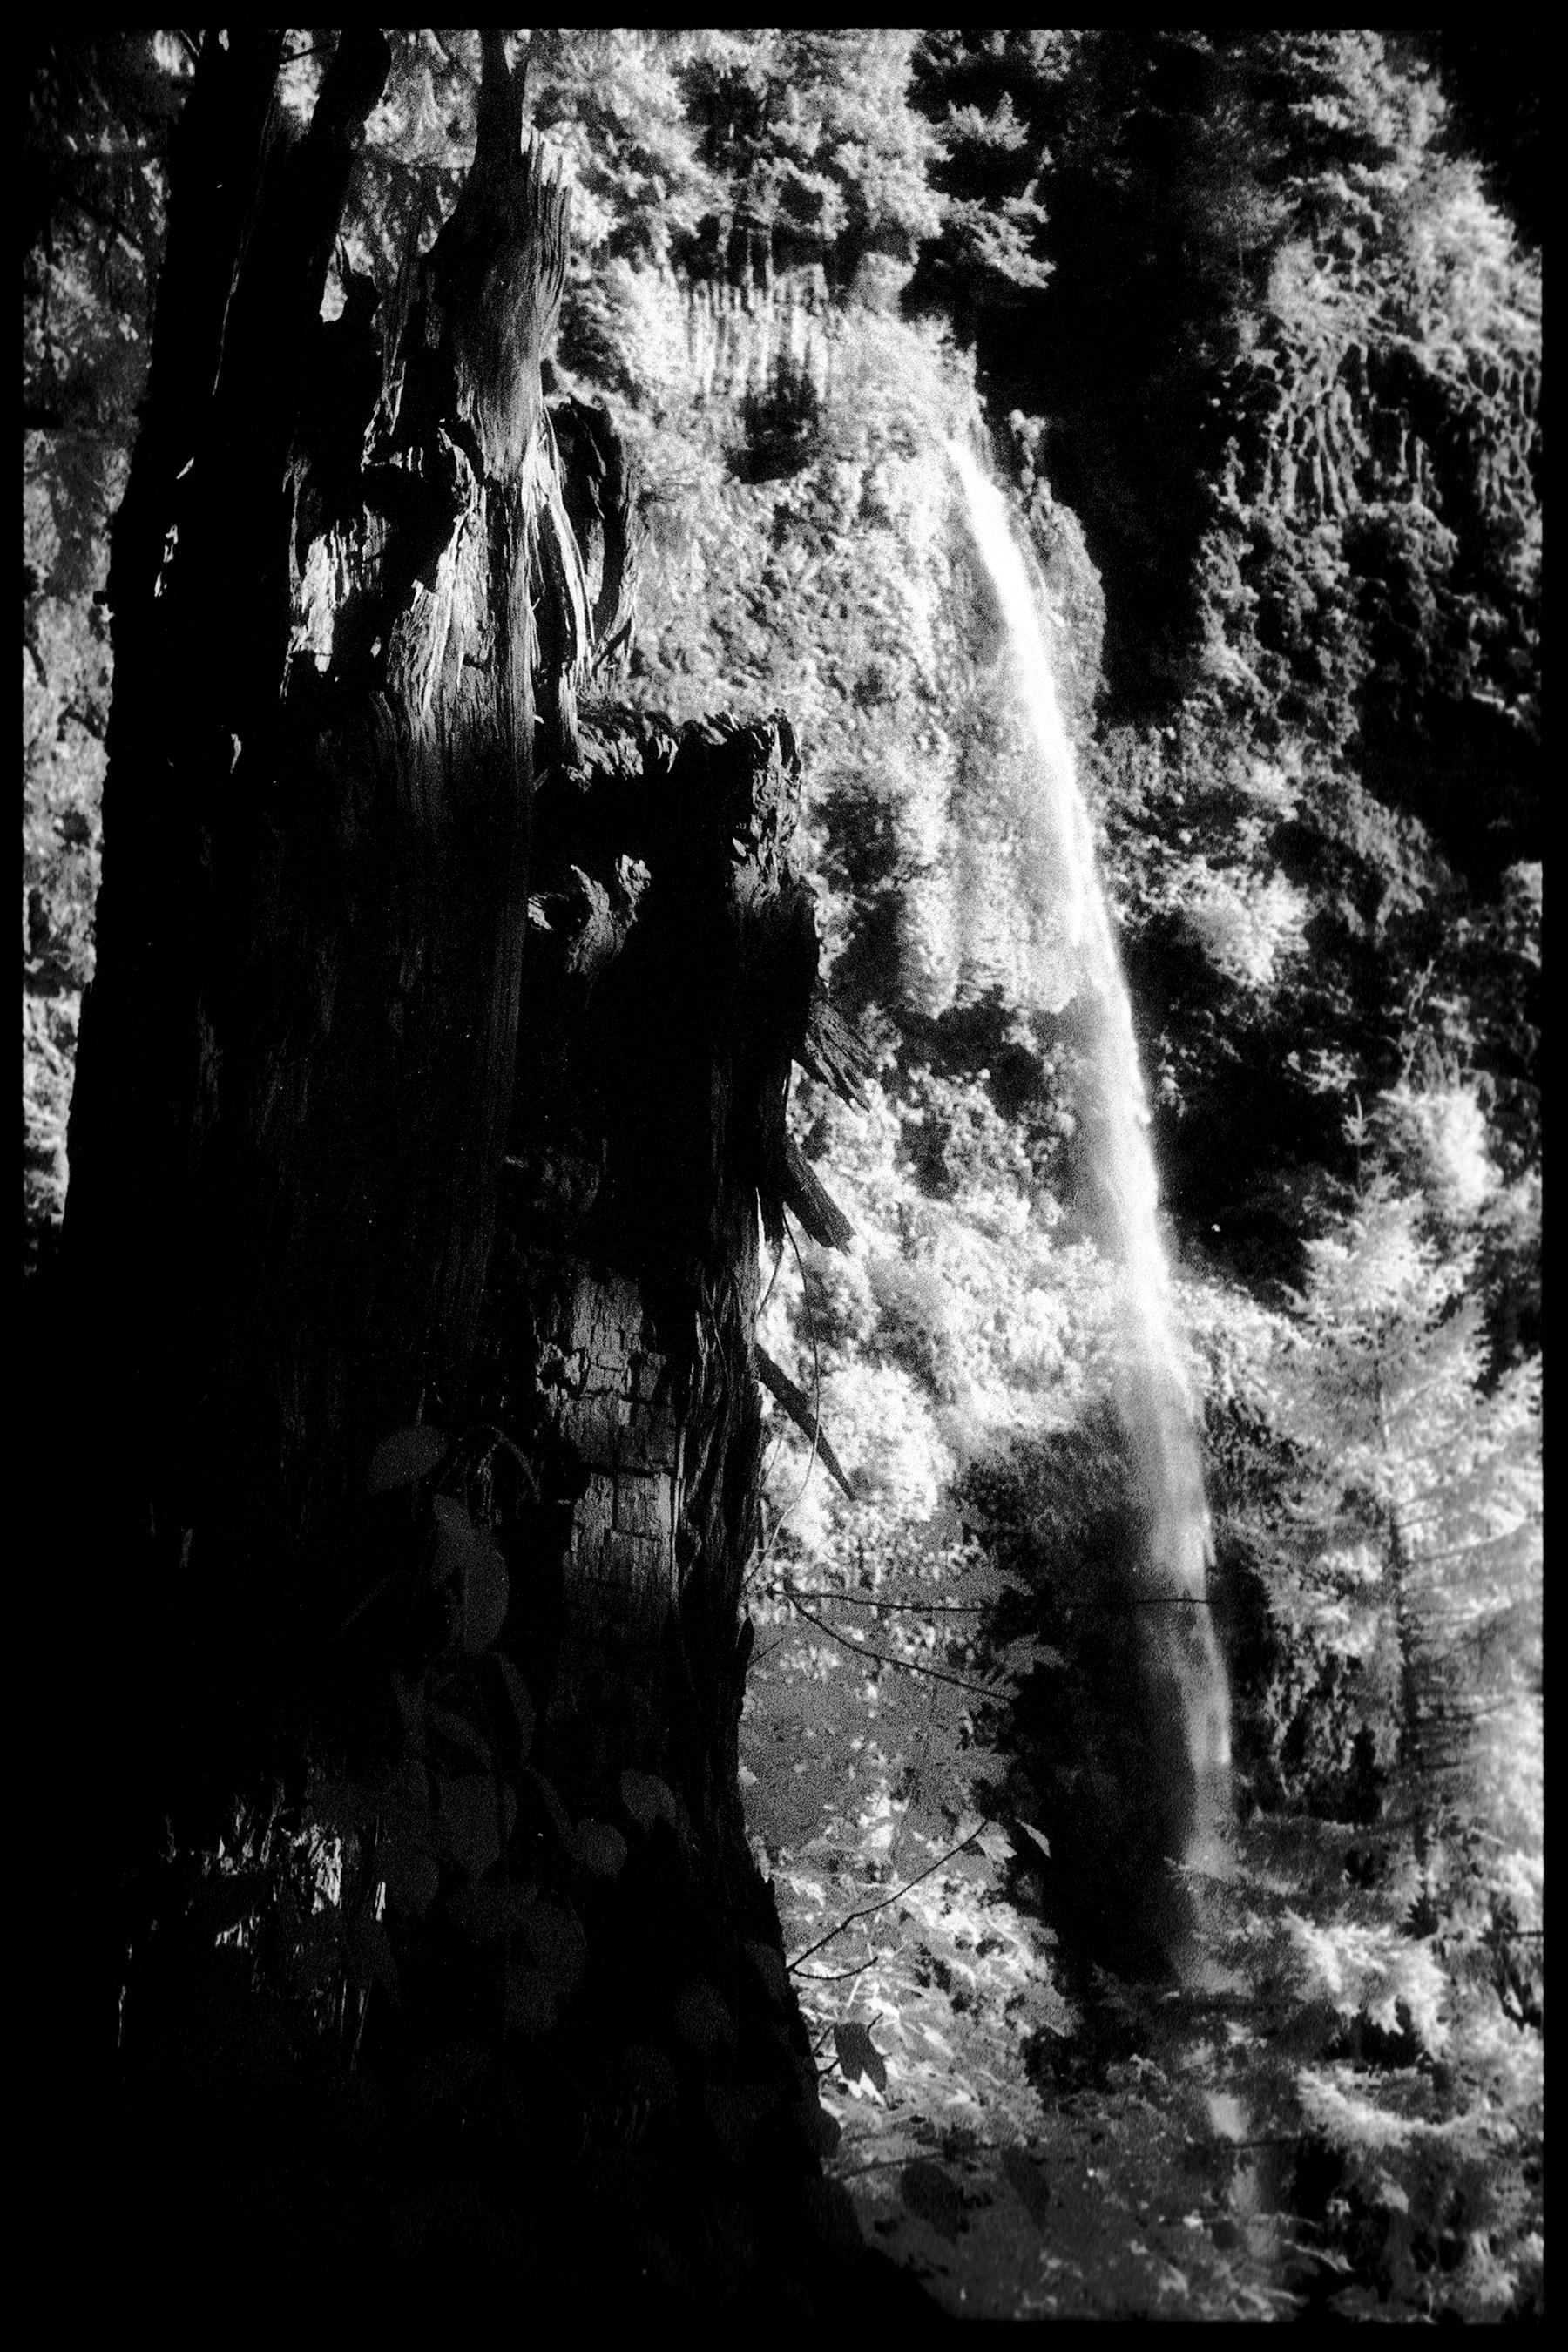 Black and White Photograph Edward Alfano - Les chutes de Multnomah I - Photographie en noir et blanc du parc national de l'Oregon